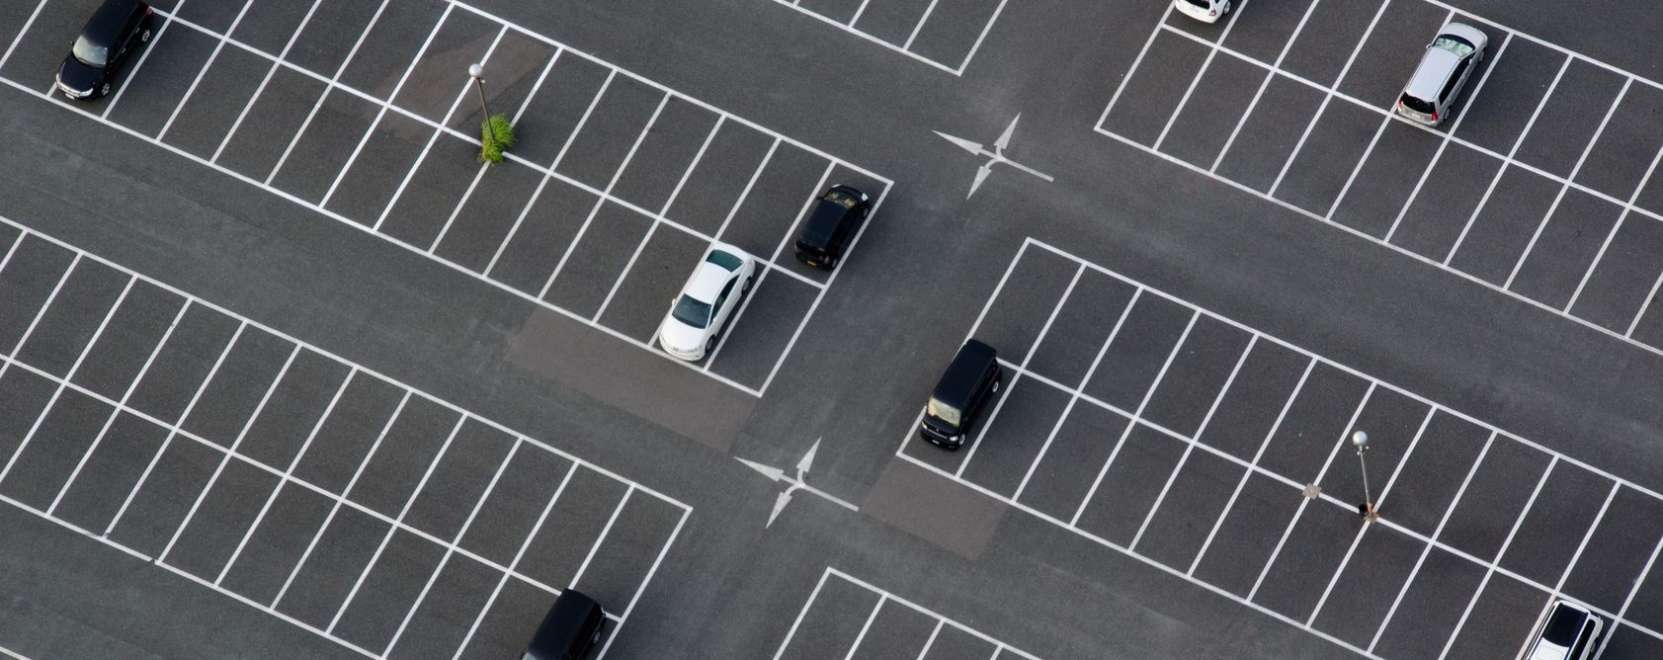 Így is parkolhat az okosautó